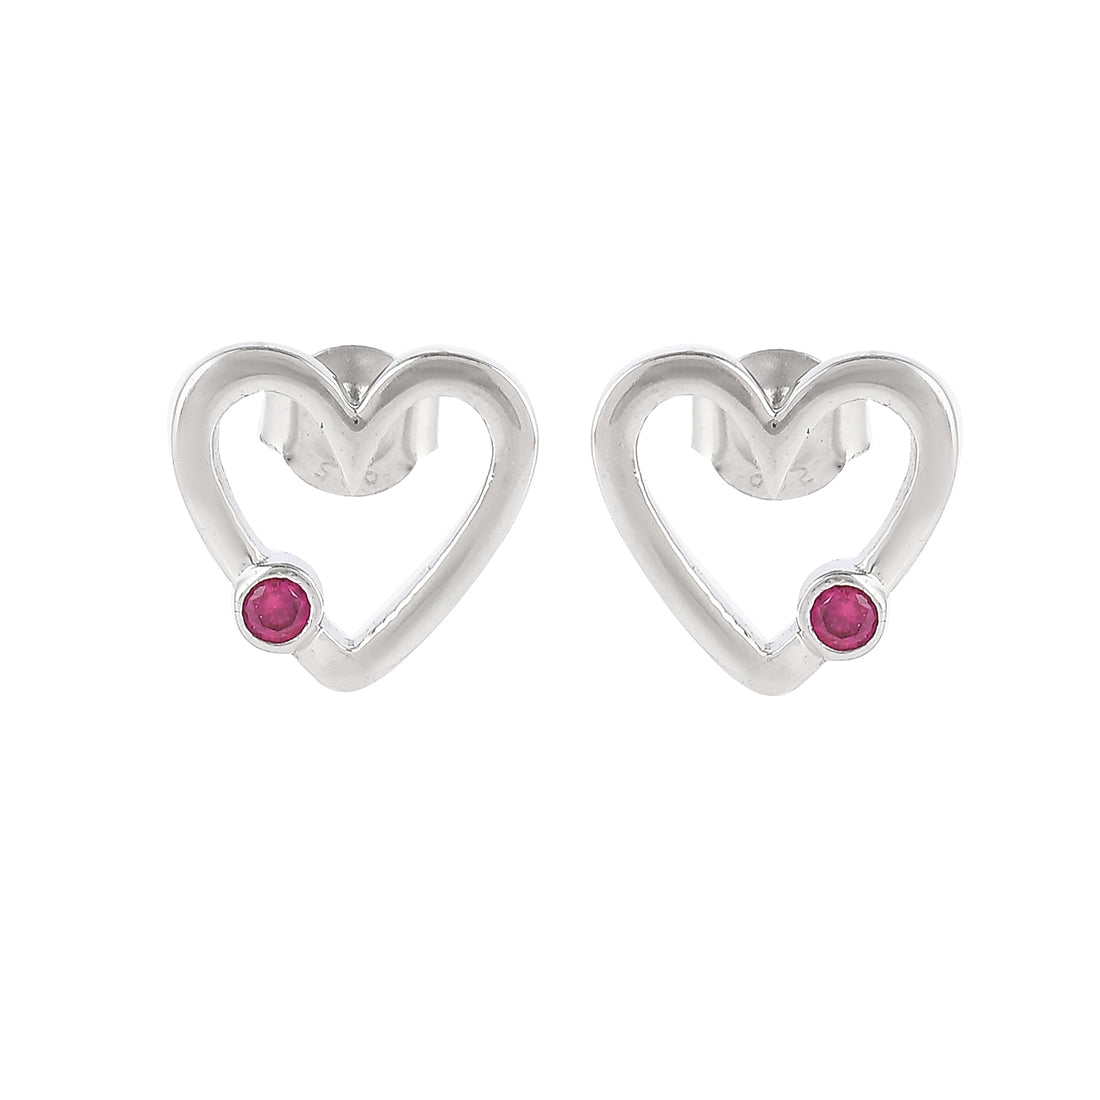 Women's Pink Zircon Studded Heart Drop Earrings - Voylla